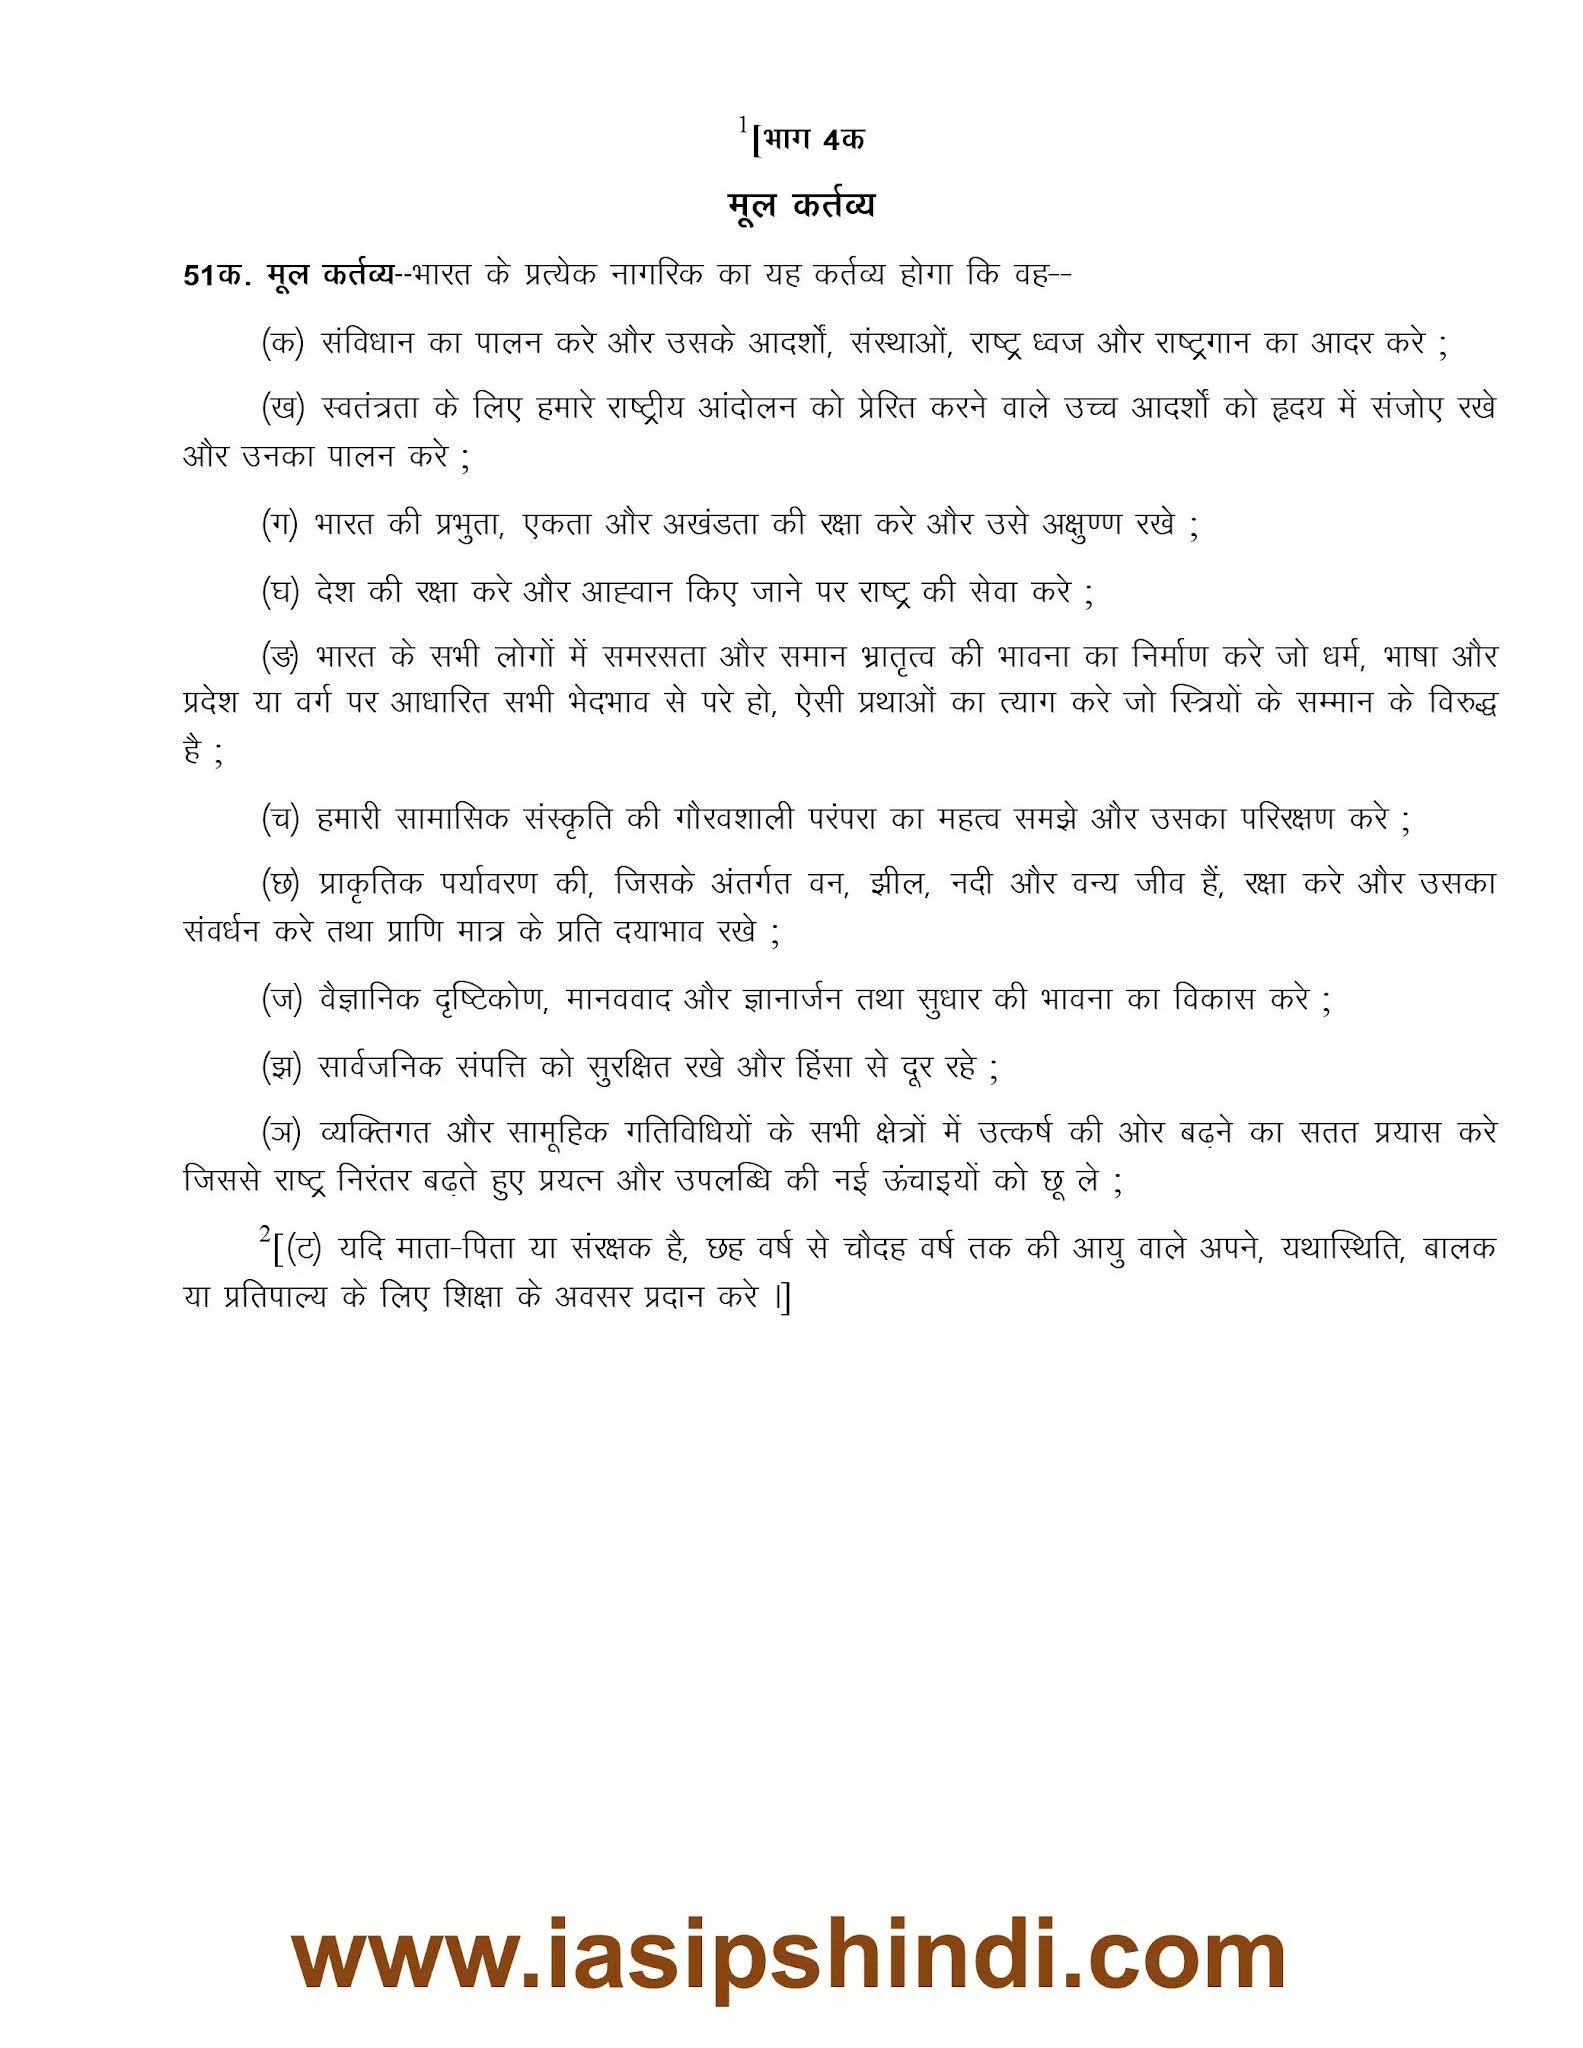 Fundamental Duties in Hindi